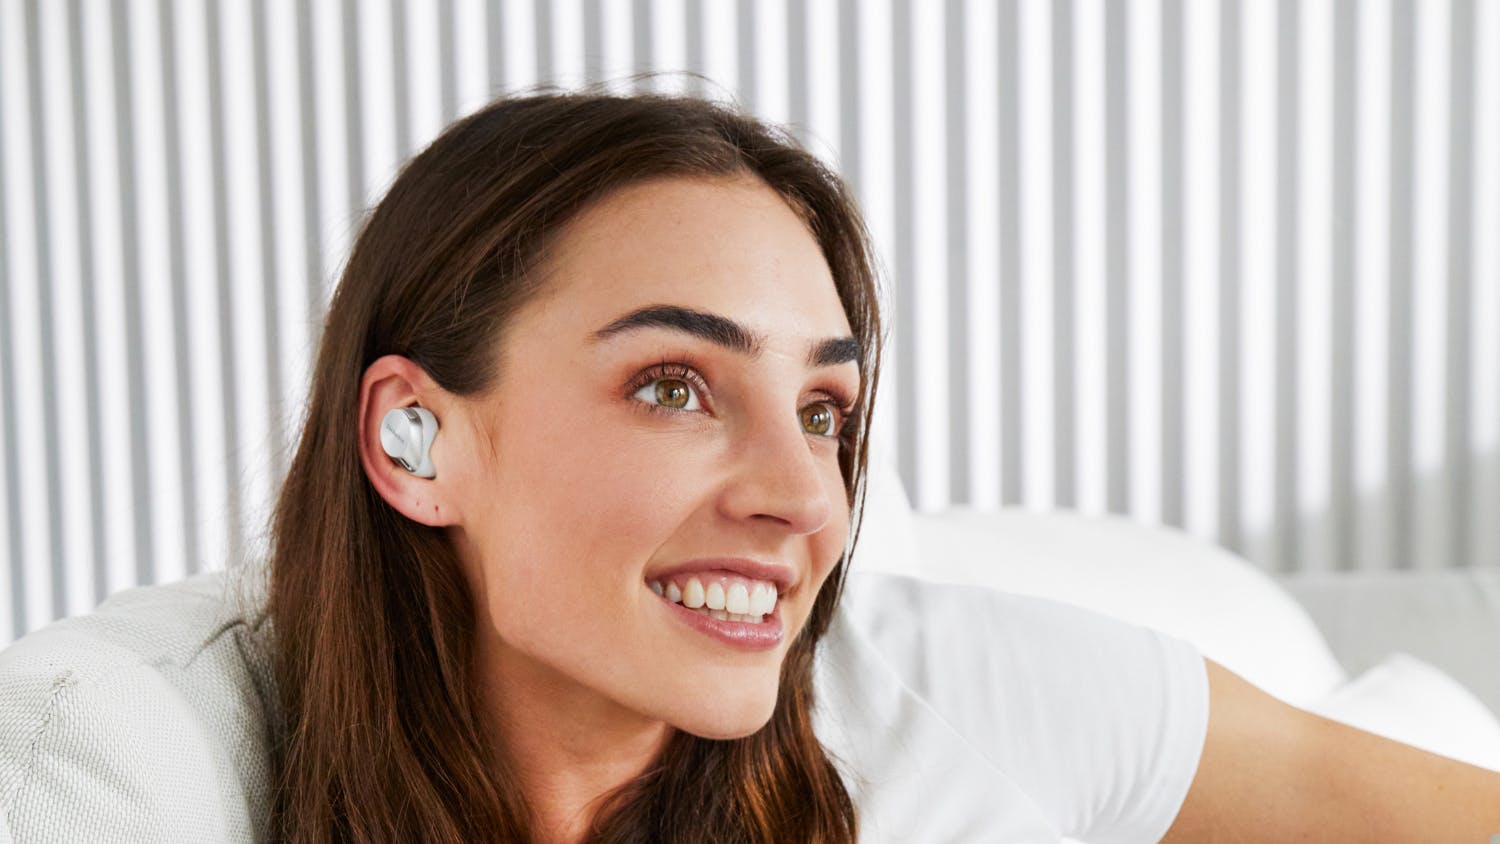 Technics EAH-AZ60 Hybrid Noise Cancelling True Wireless In-Ear Headphones - Silver